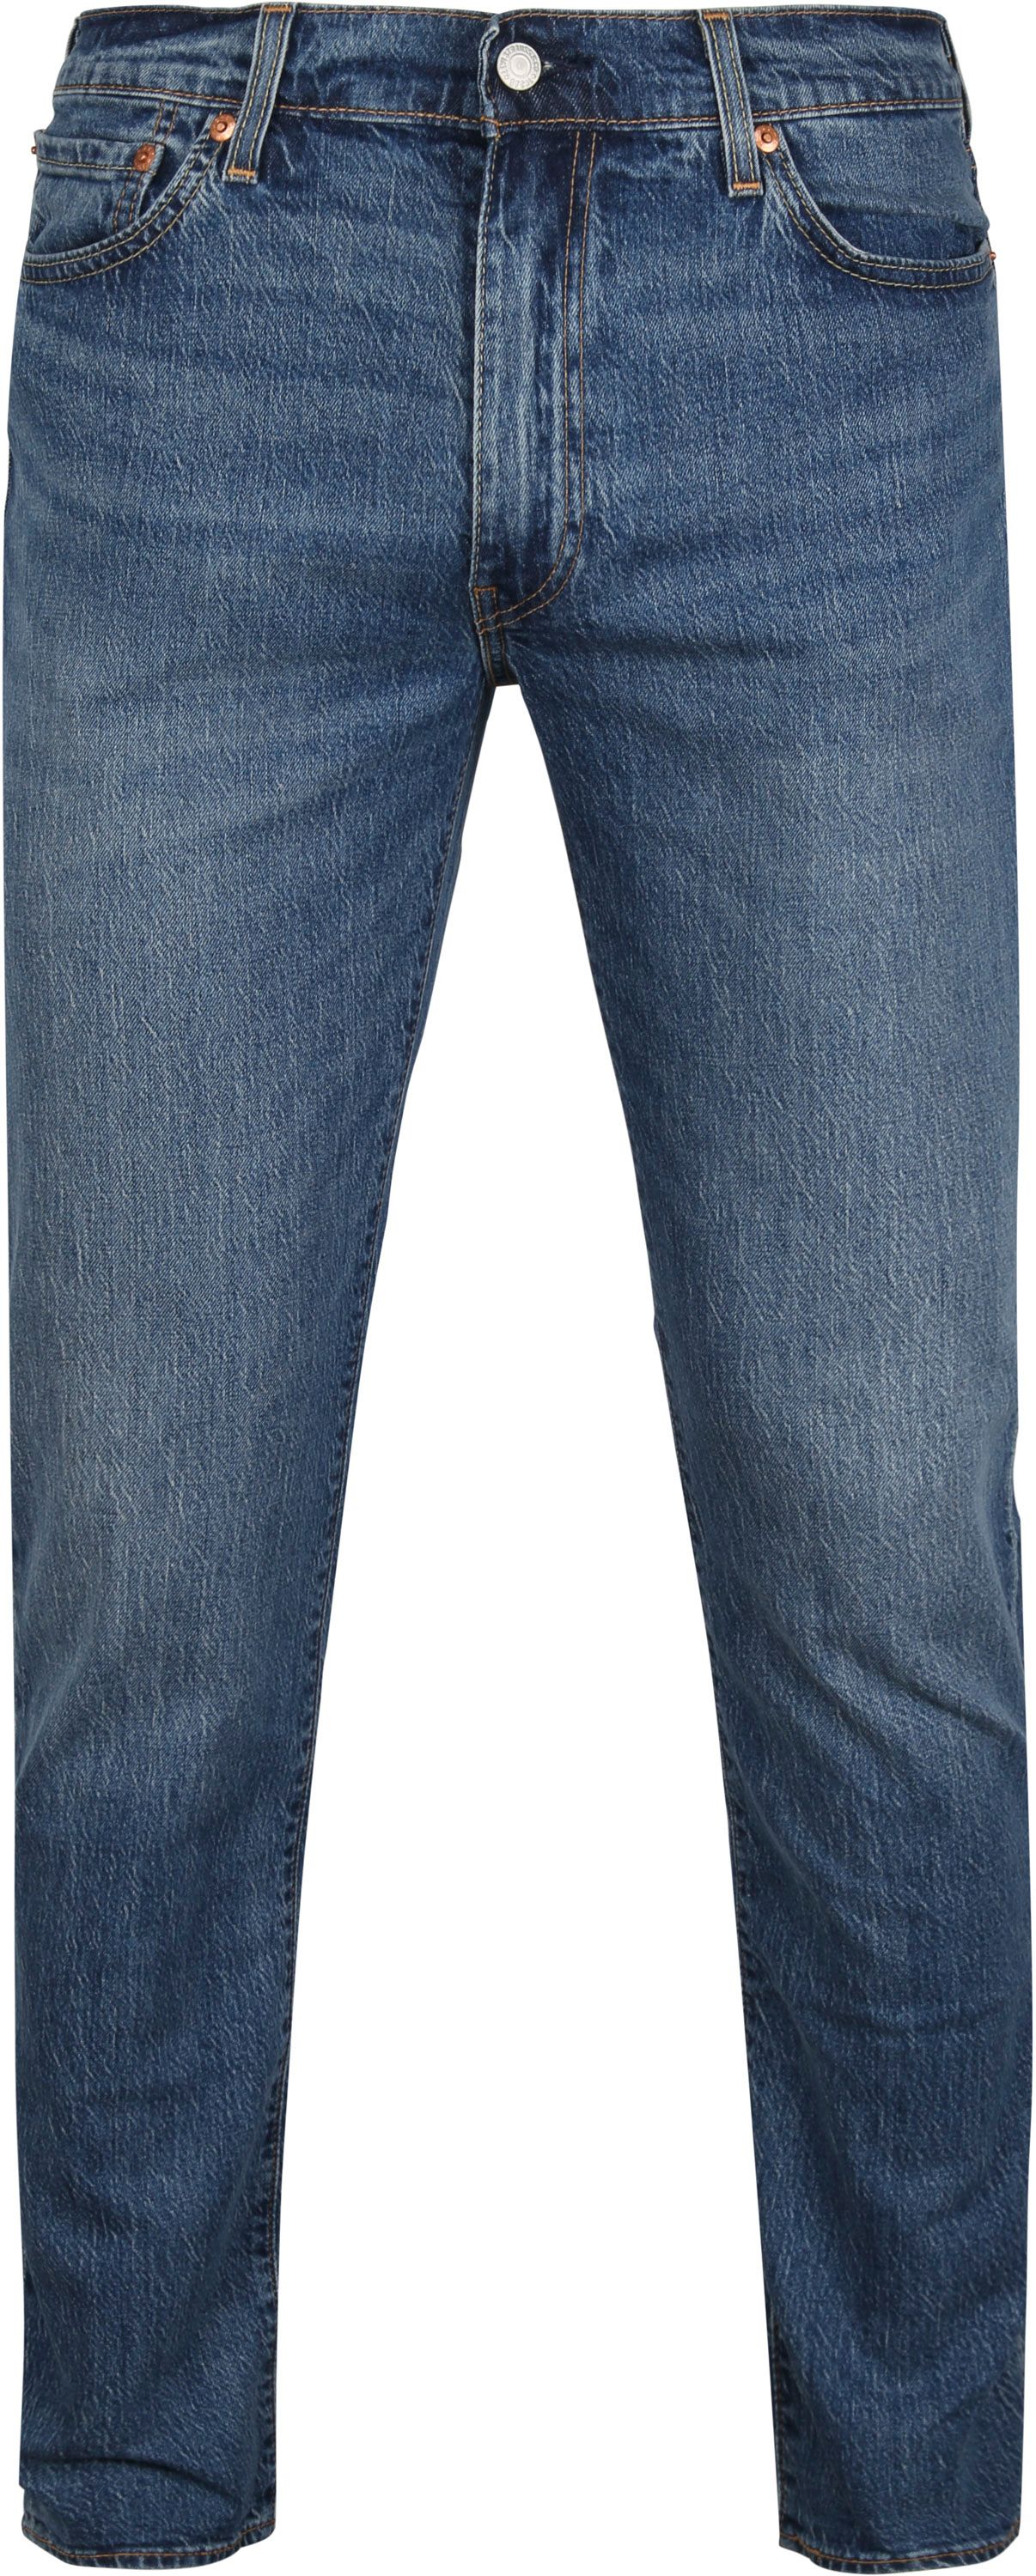 Levis - Levi's 511 denim jeans blue size w 30